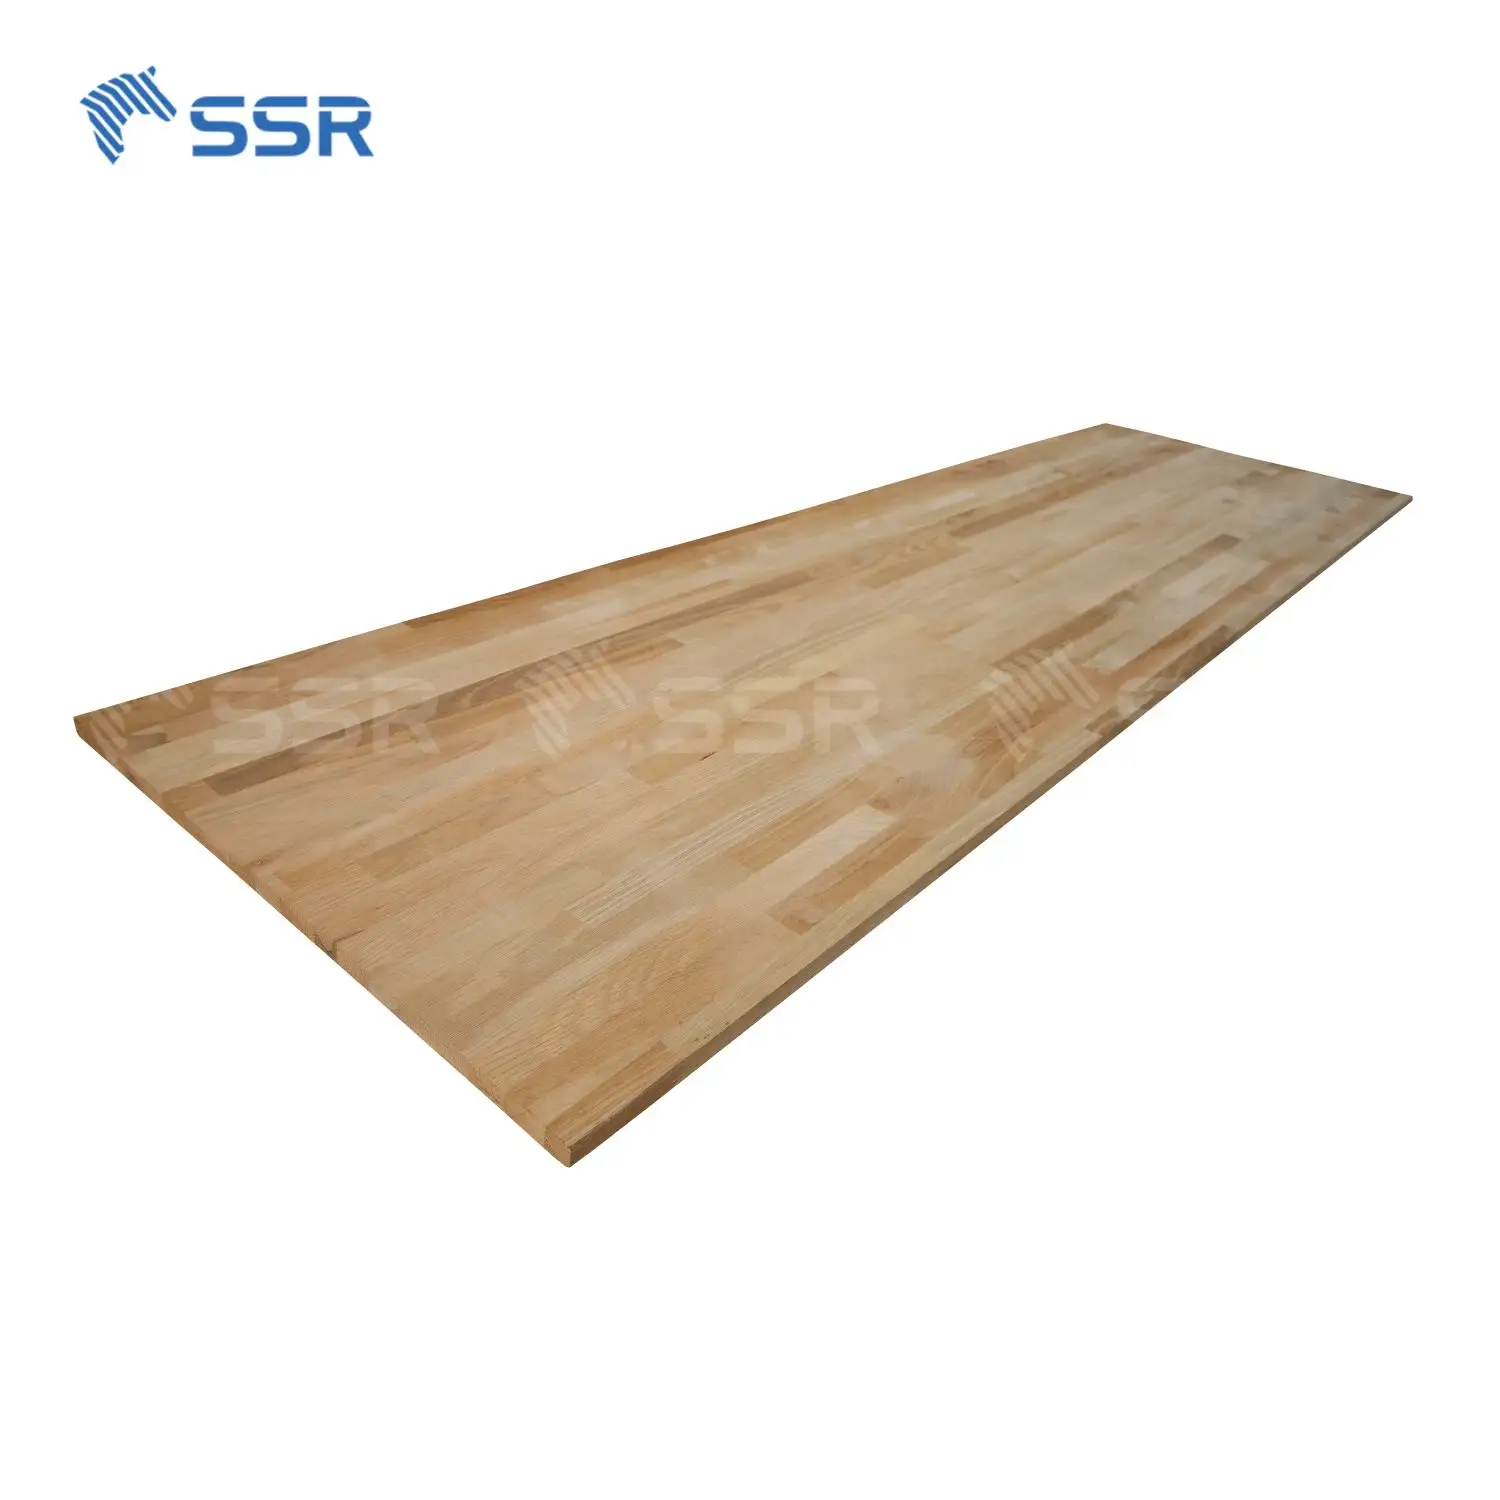 SSR VINA-дубовая деревянная доска для суставов-4x8 футов дубовая деревянная доска для суставов дубовая деревянная панель